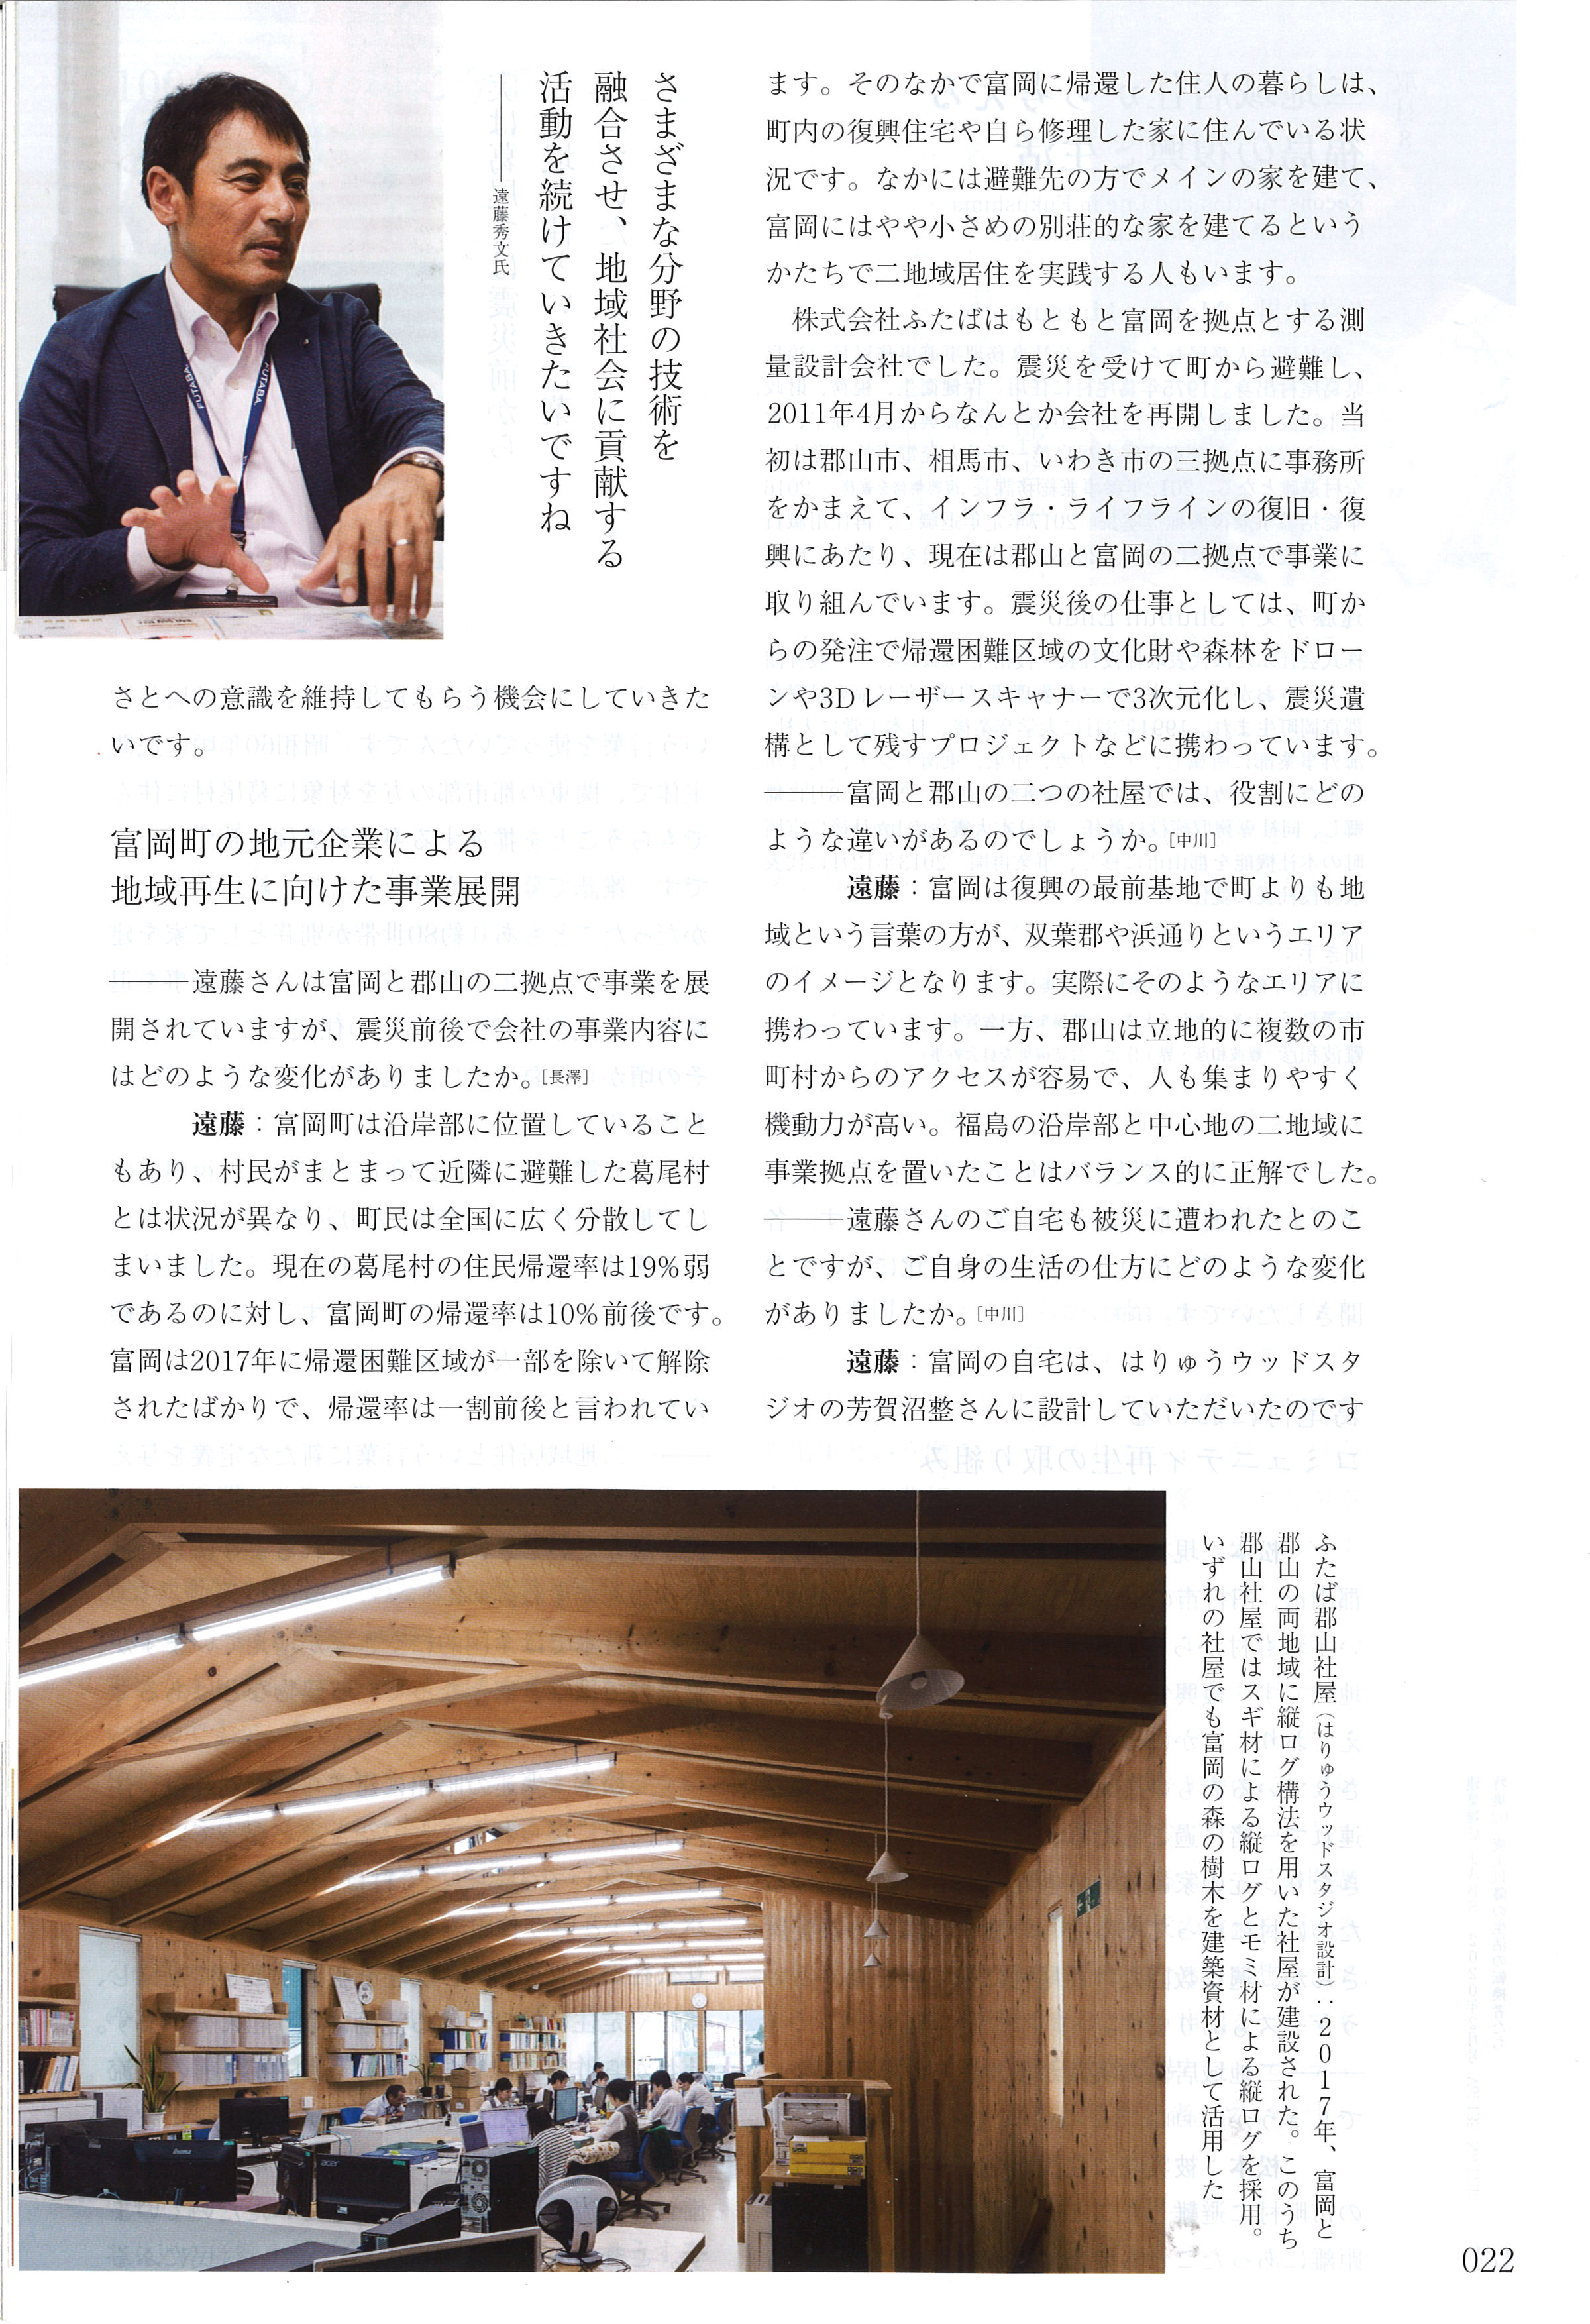 『建築雑誌』に社長インタビュー掲載されましたの画像